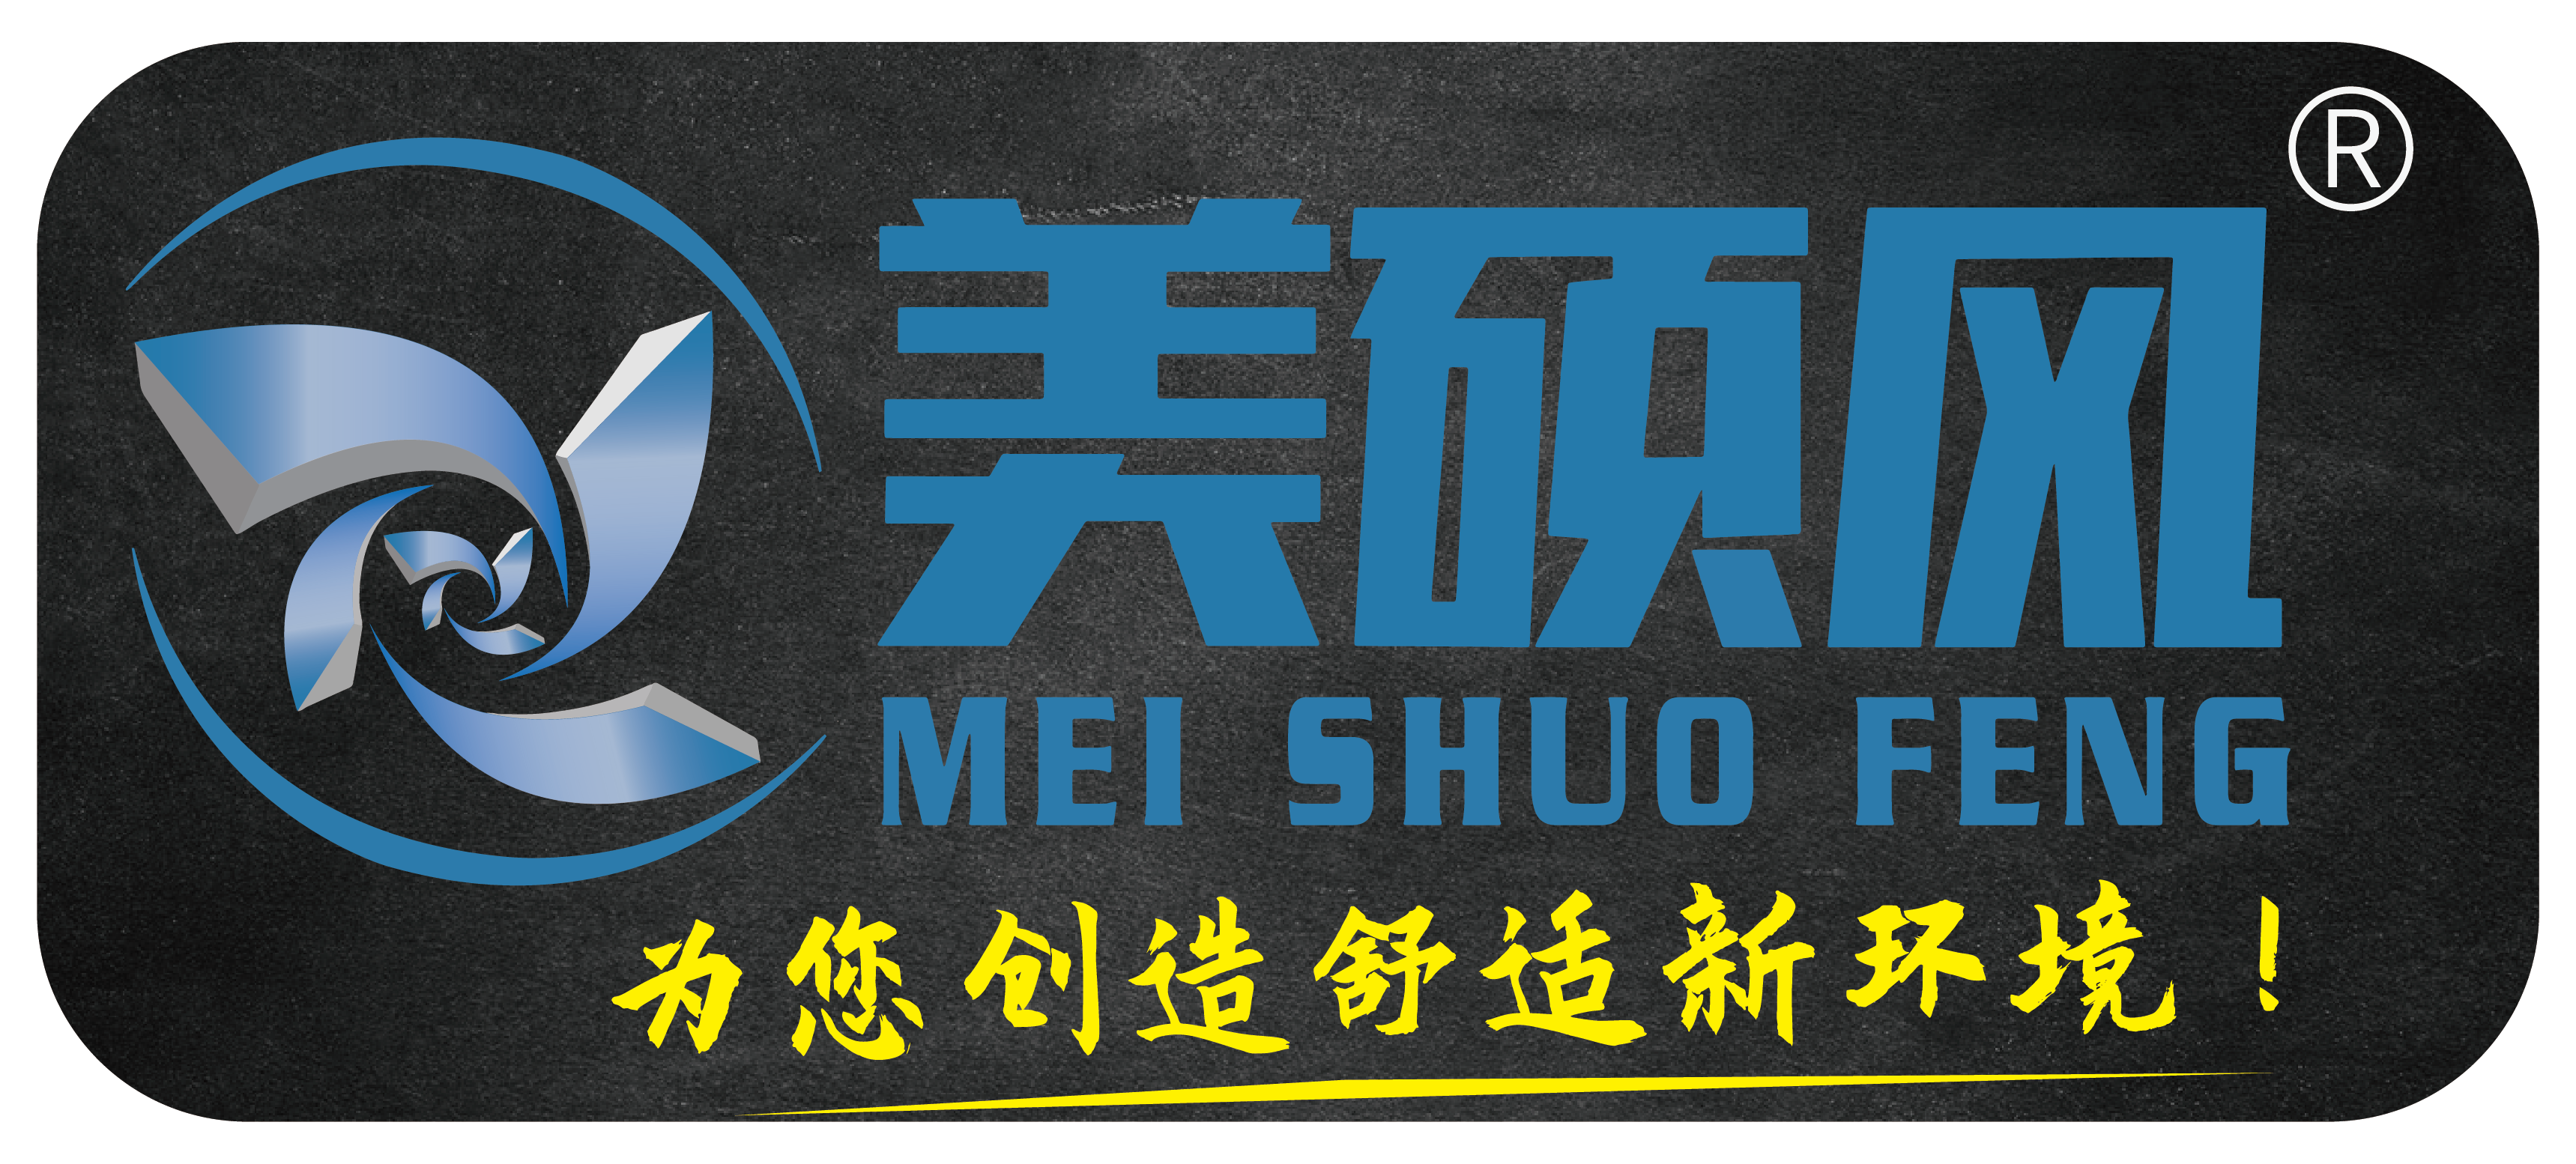 Meishuofeng logo